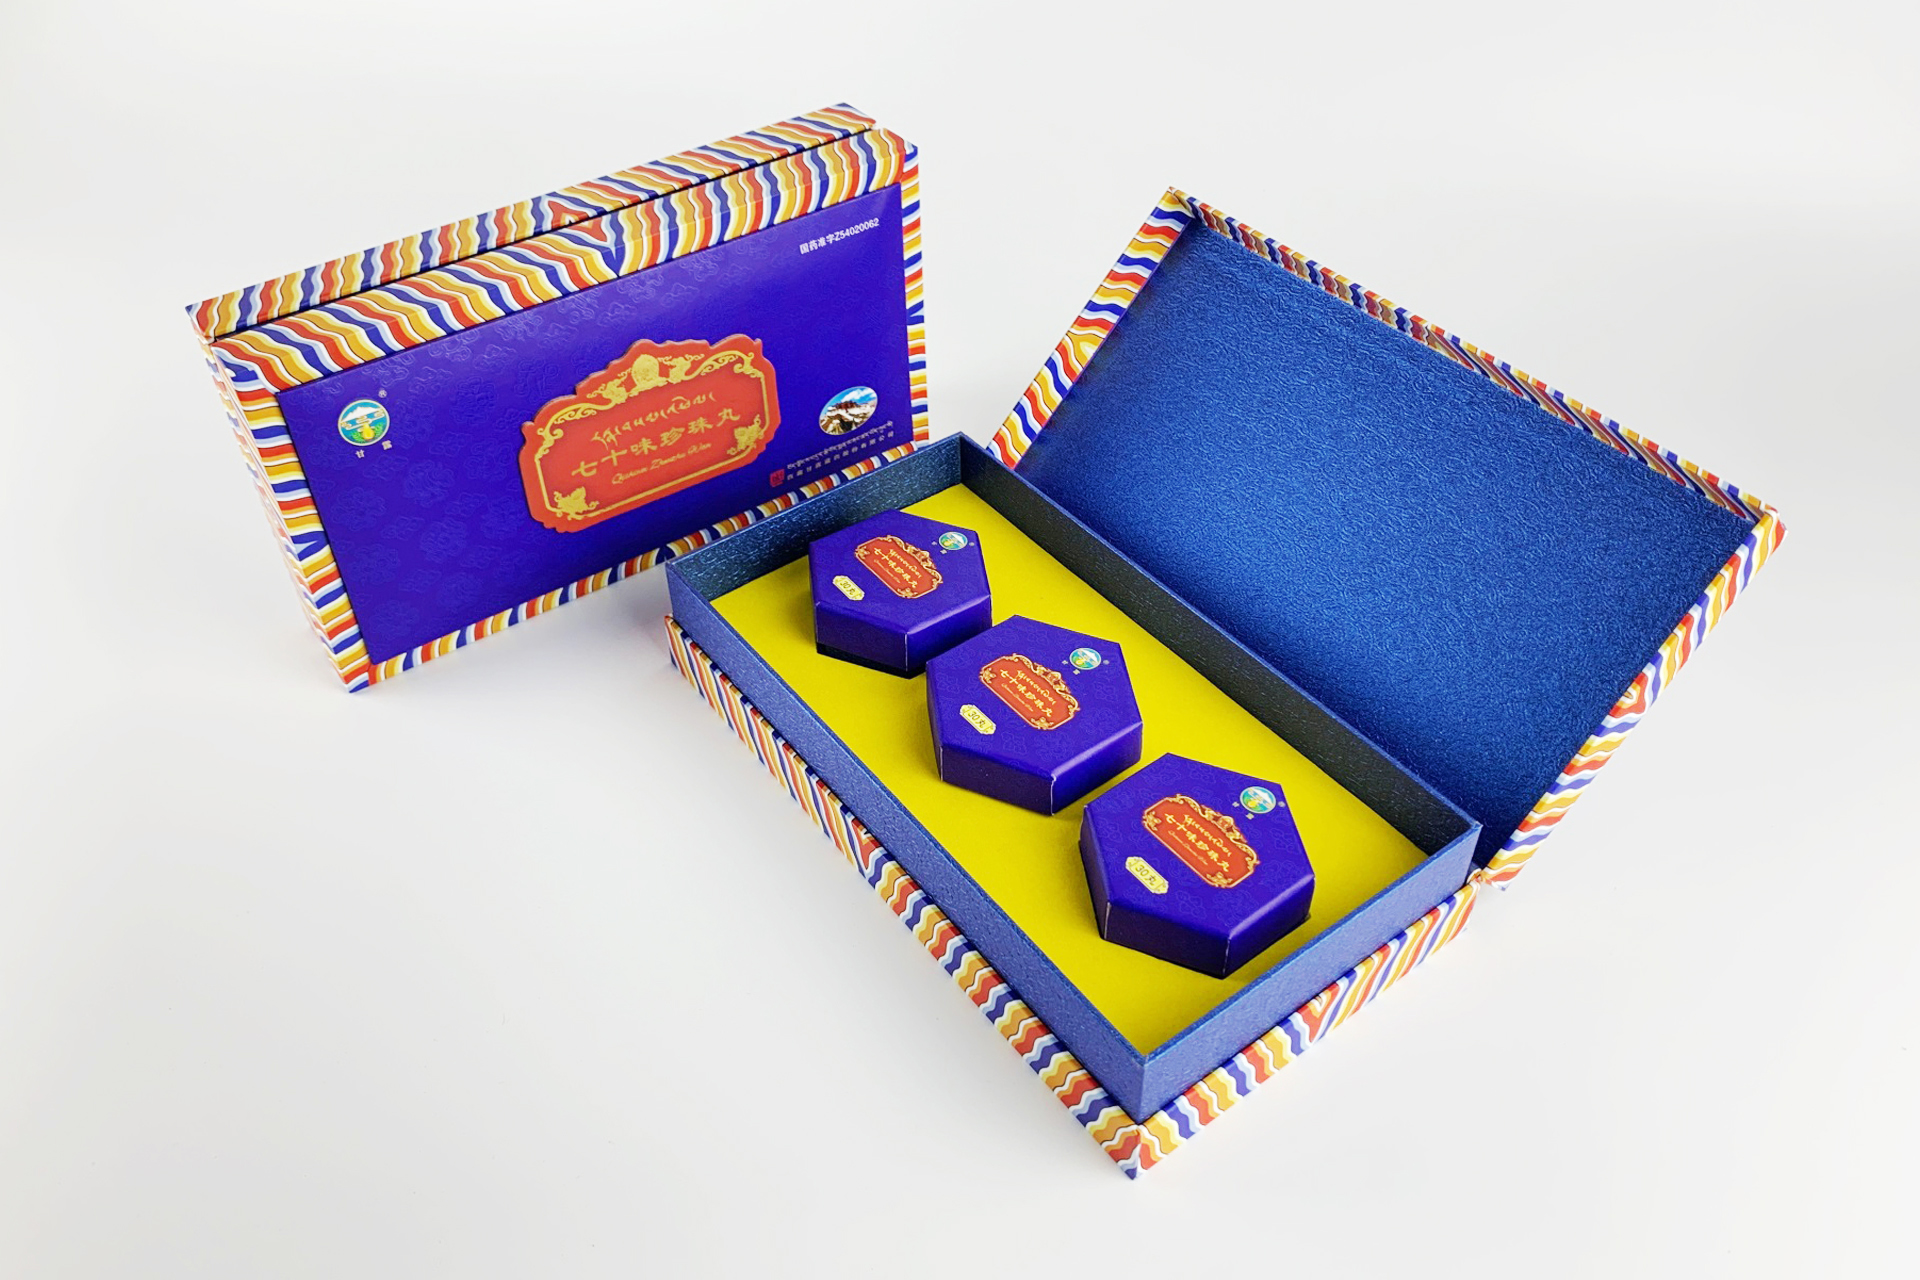 甘露藏藥七十味珍珠丸精裝書型盒設計定制